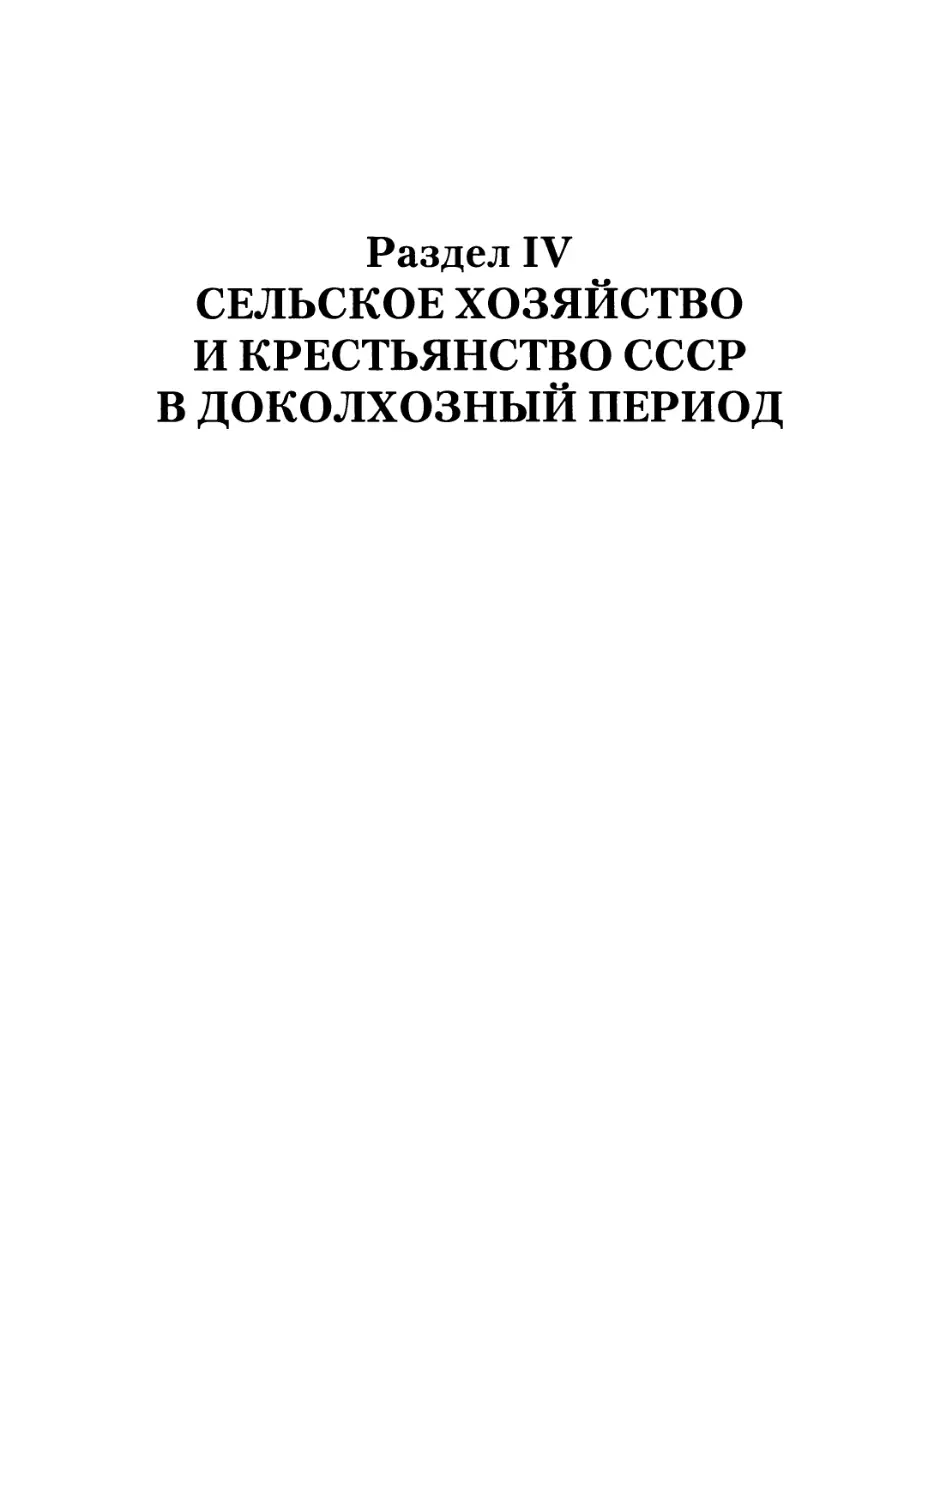 Раздел IV. Сельское хозяйство и крестьянство СССР в доколхозный период